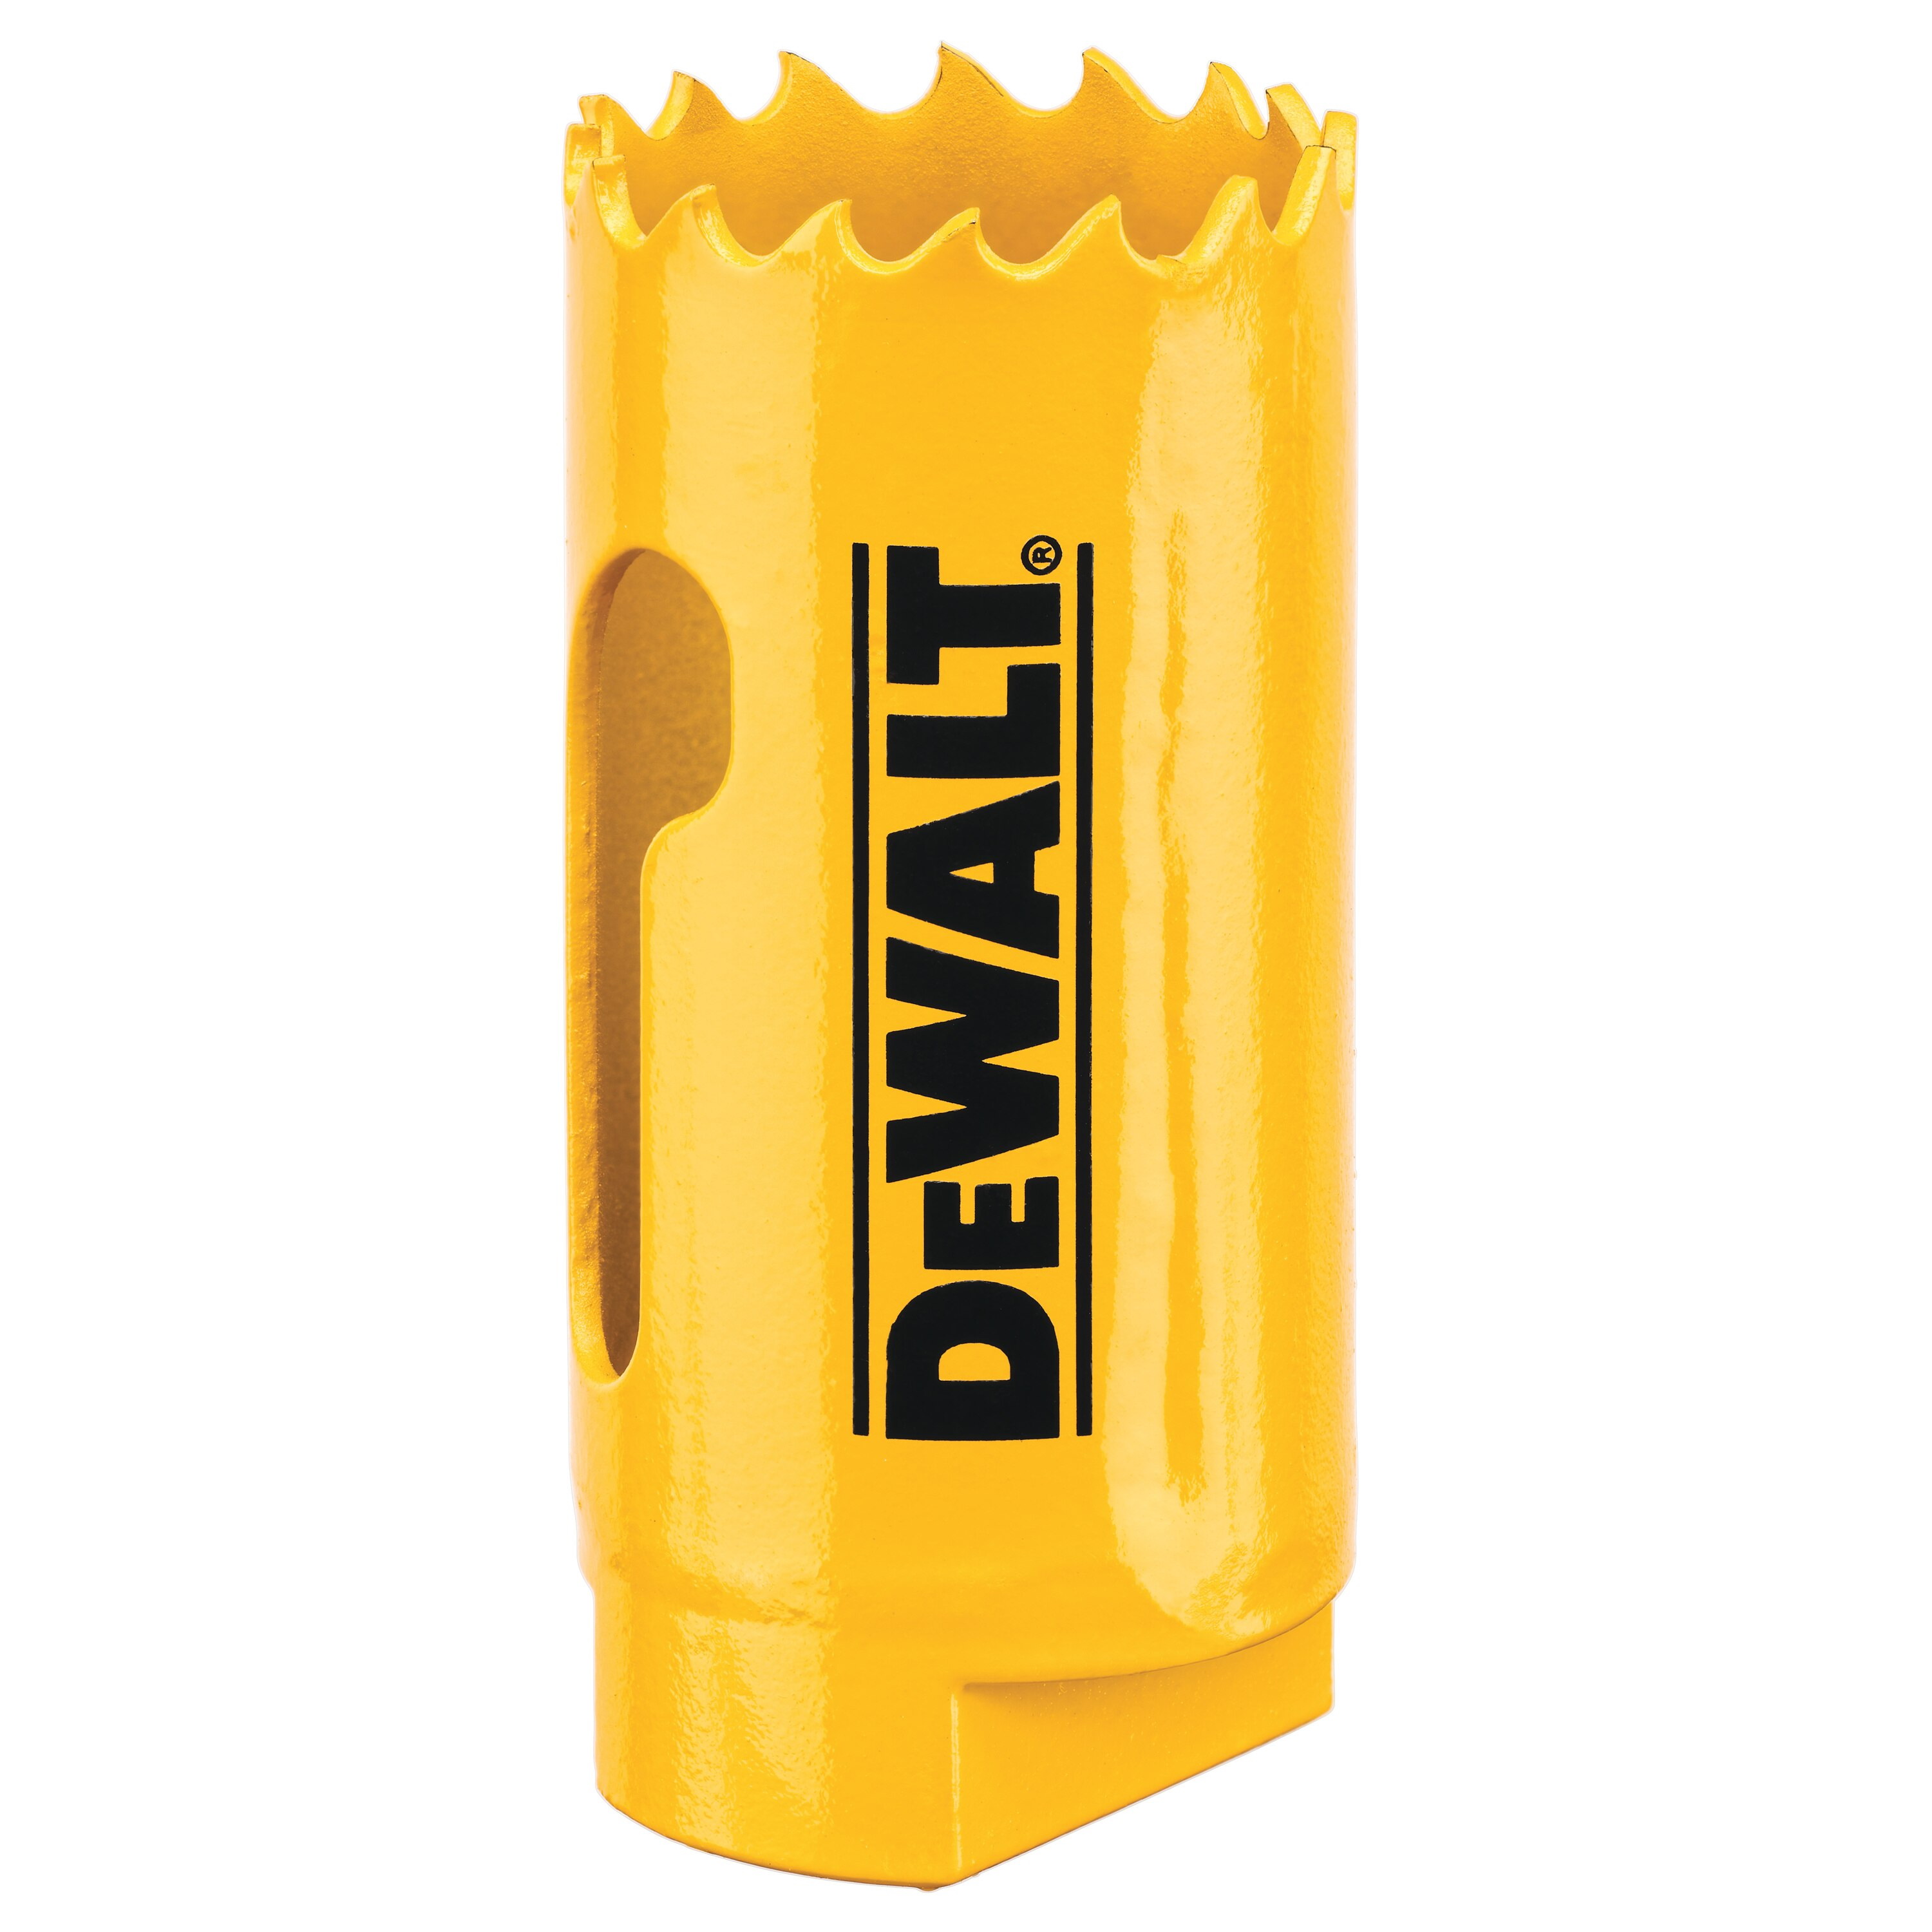 DeWALT DAH180016 Hole Saw, 1 in Dia, 1-3/4 in D Cutting, 1/2-20 Arbor, 4/5 TPI, HSS Cutting Edge